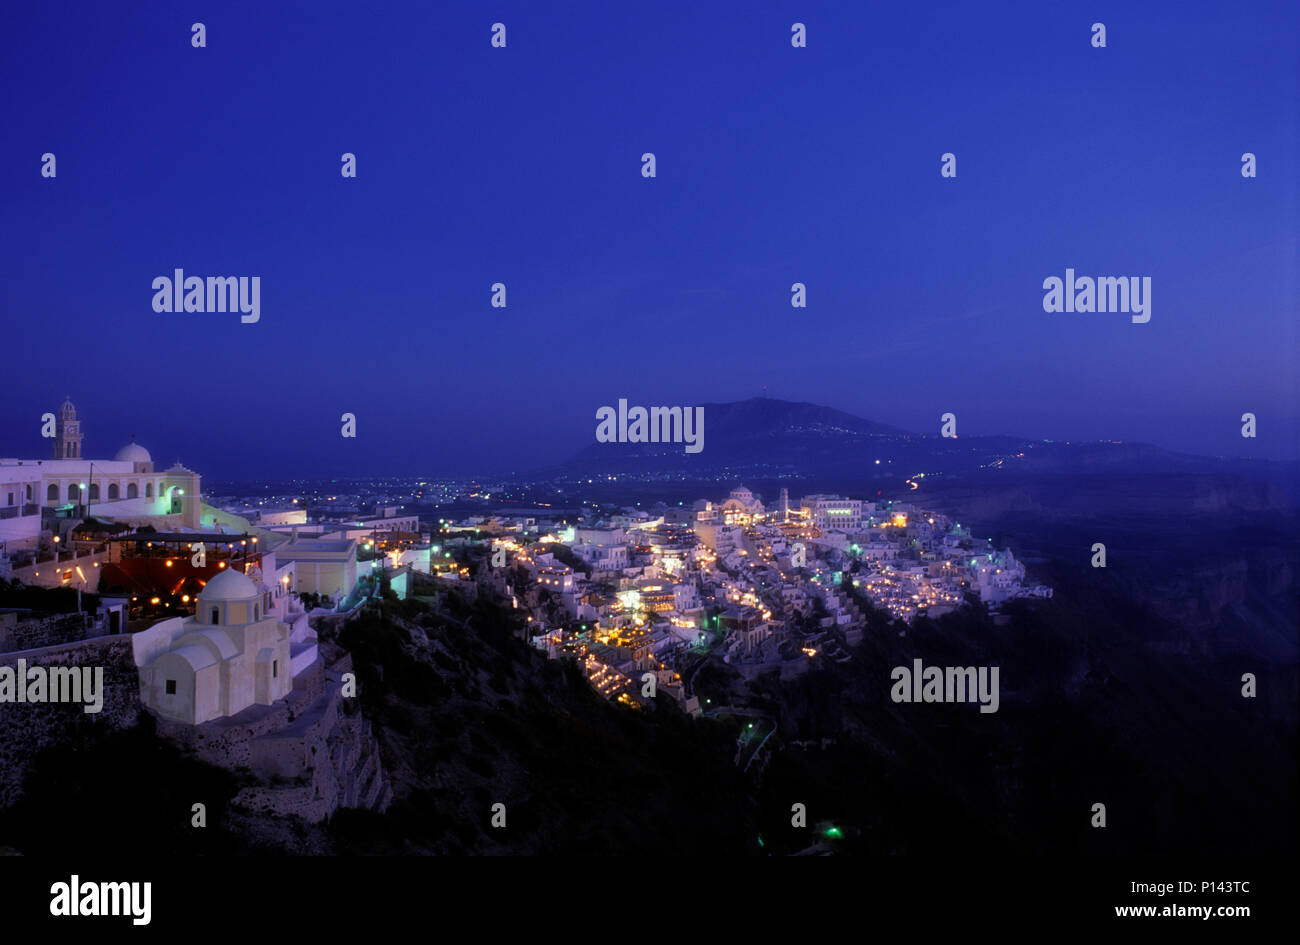 Isla griega de Thira (Santorini), vistas de los acantilados, mirando al sur, mostrando la ciudad de Thira a lo largo del borde del precipicio al anochecer, Grecia Foto de stock